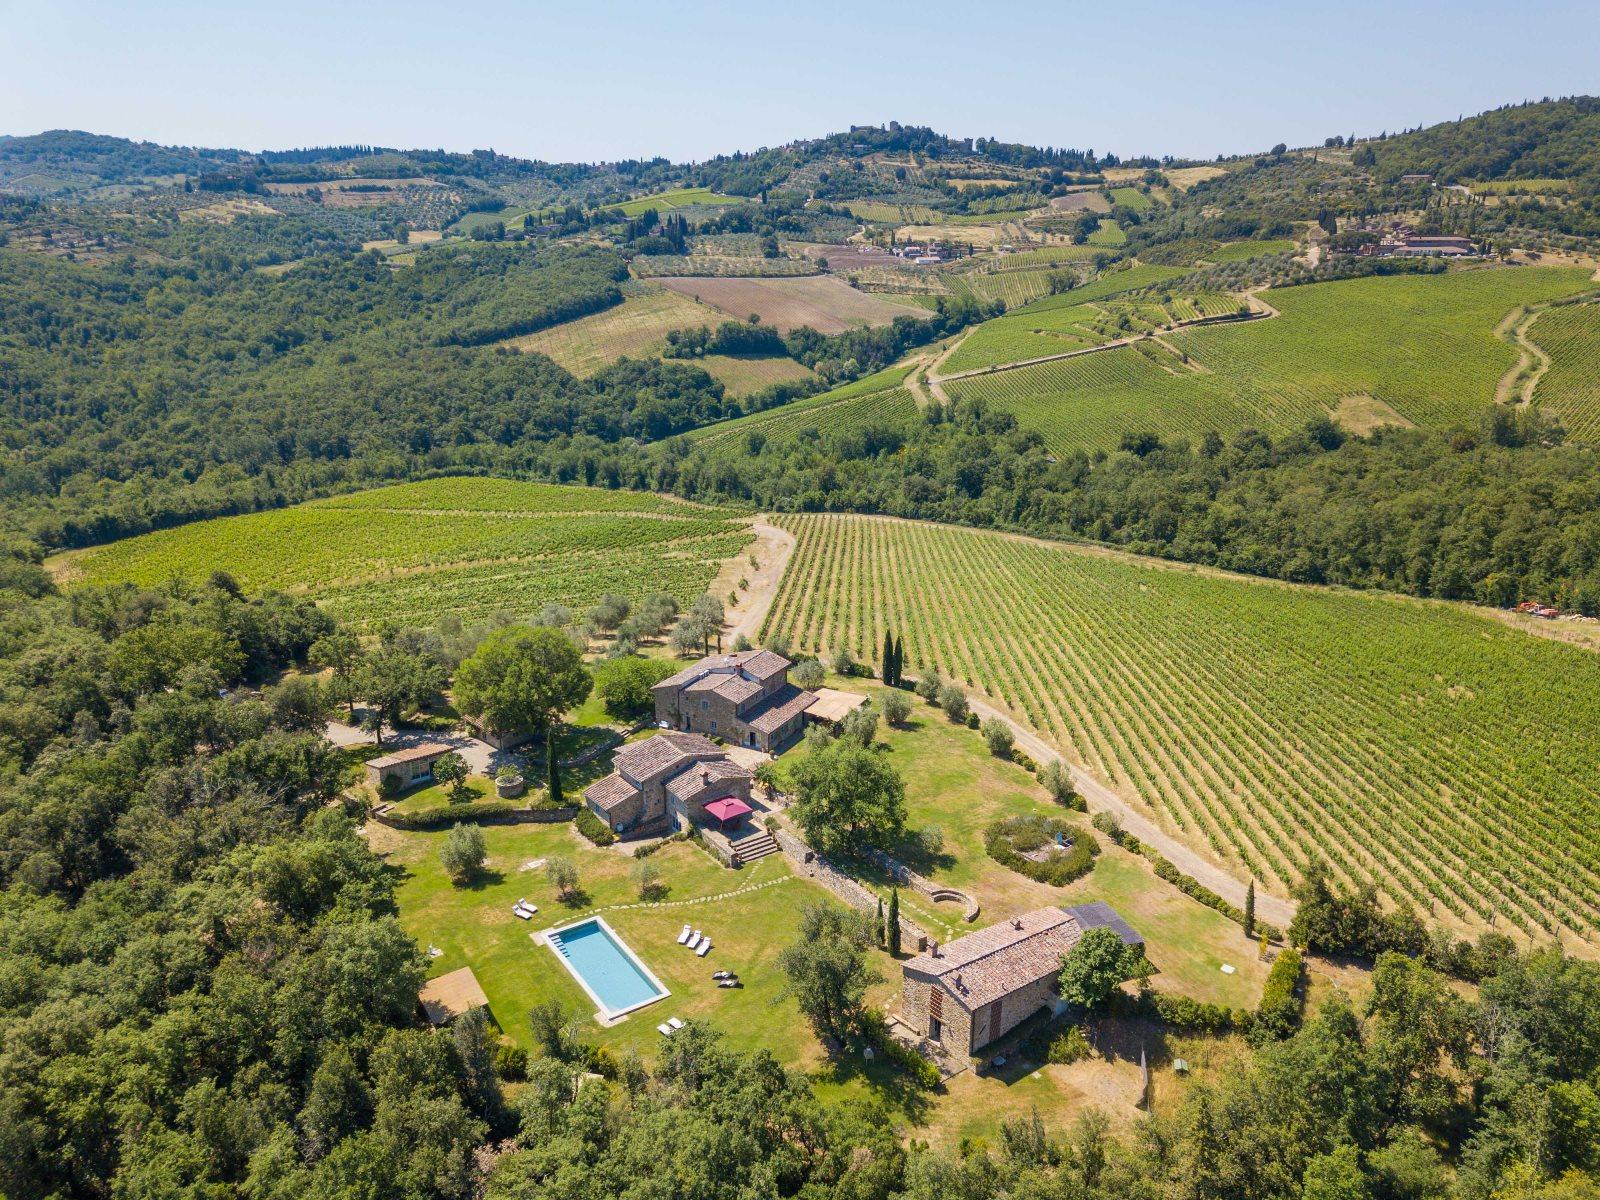 Aerial view over Il Pratio di Vignamaggio and the surroundings near Chianti, Tuscany